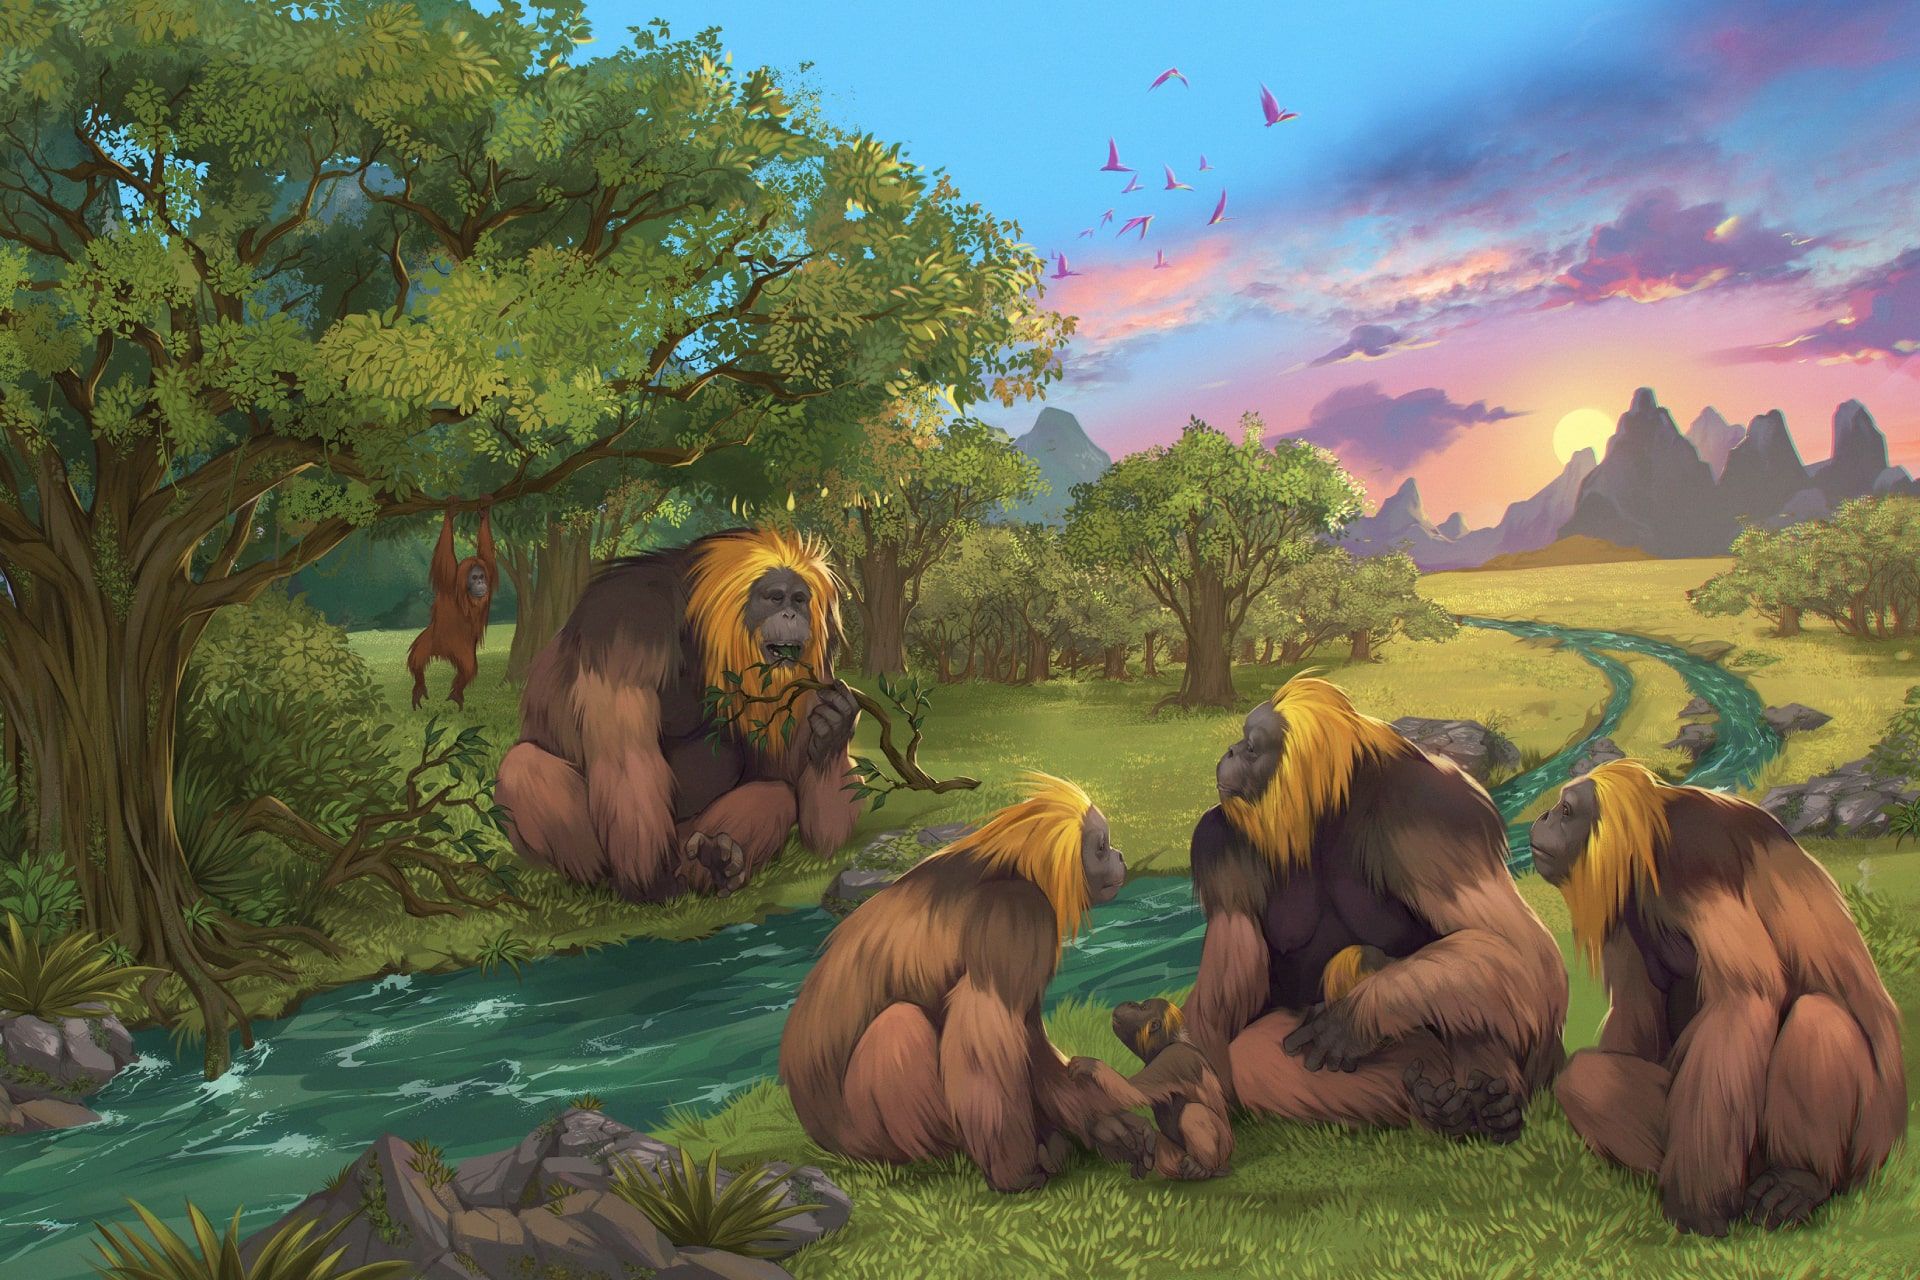 تصویرسازی گروهی از میمون های انسان نما گونه منقرض شده Gigantopithecus blacki در جنگلی در جنوب چین